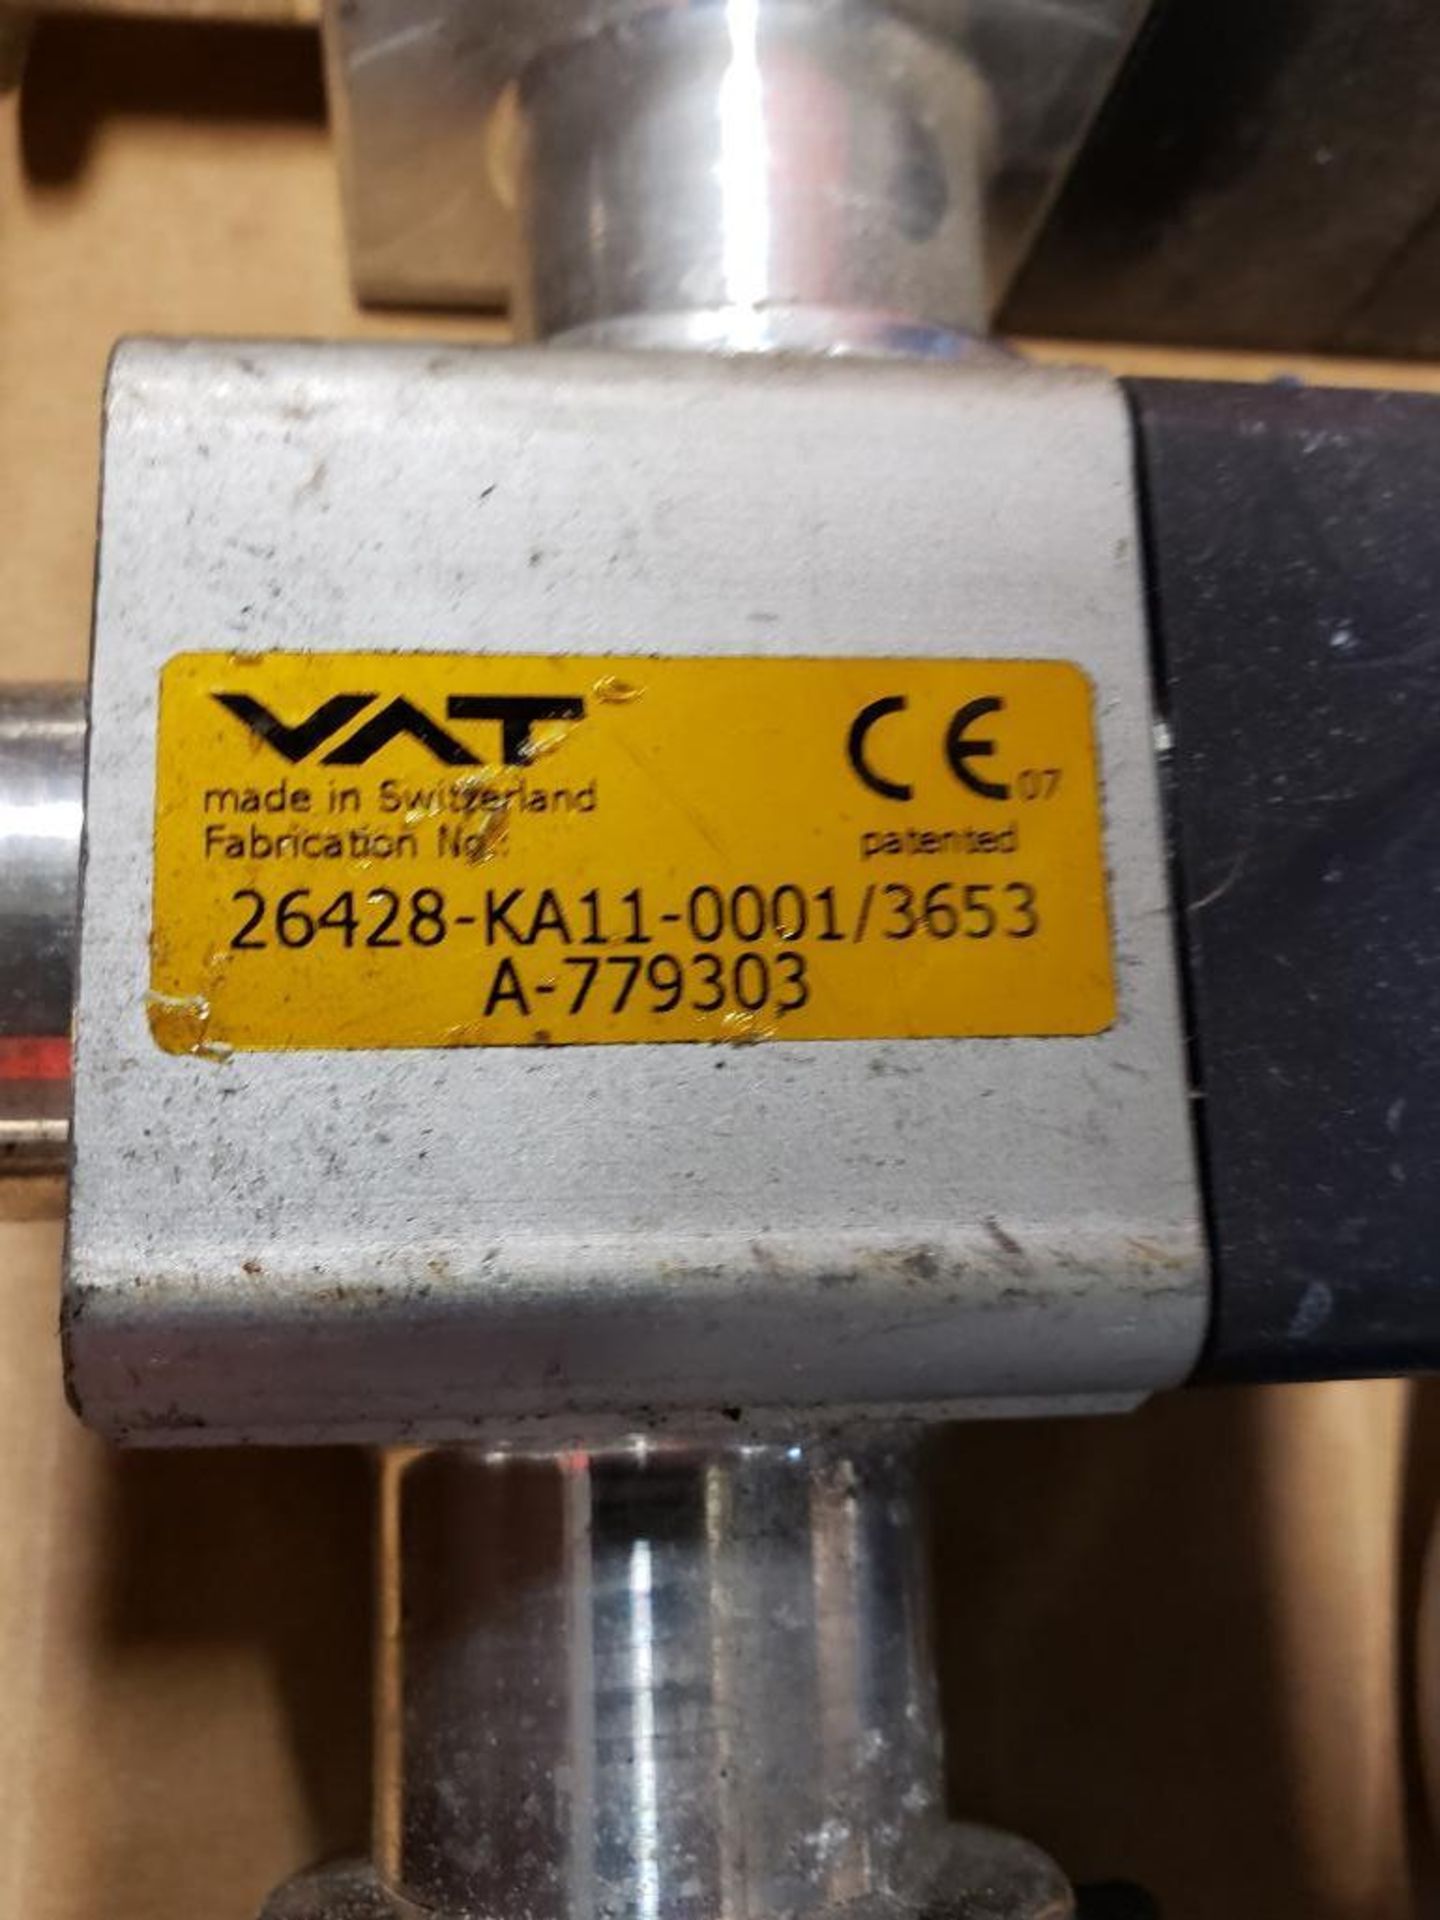 Qty 4 - VAT angle valve model 26428-KA11-0001. - Image 2 of 2